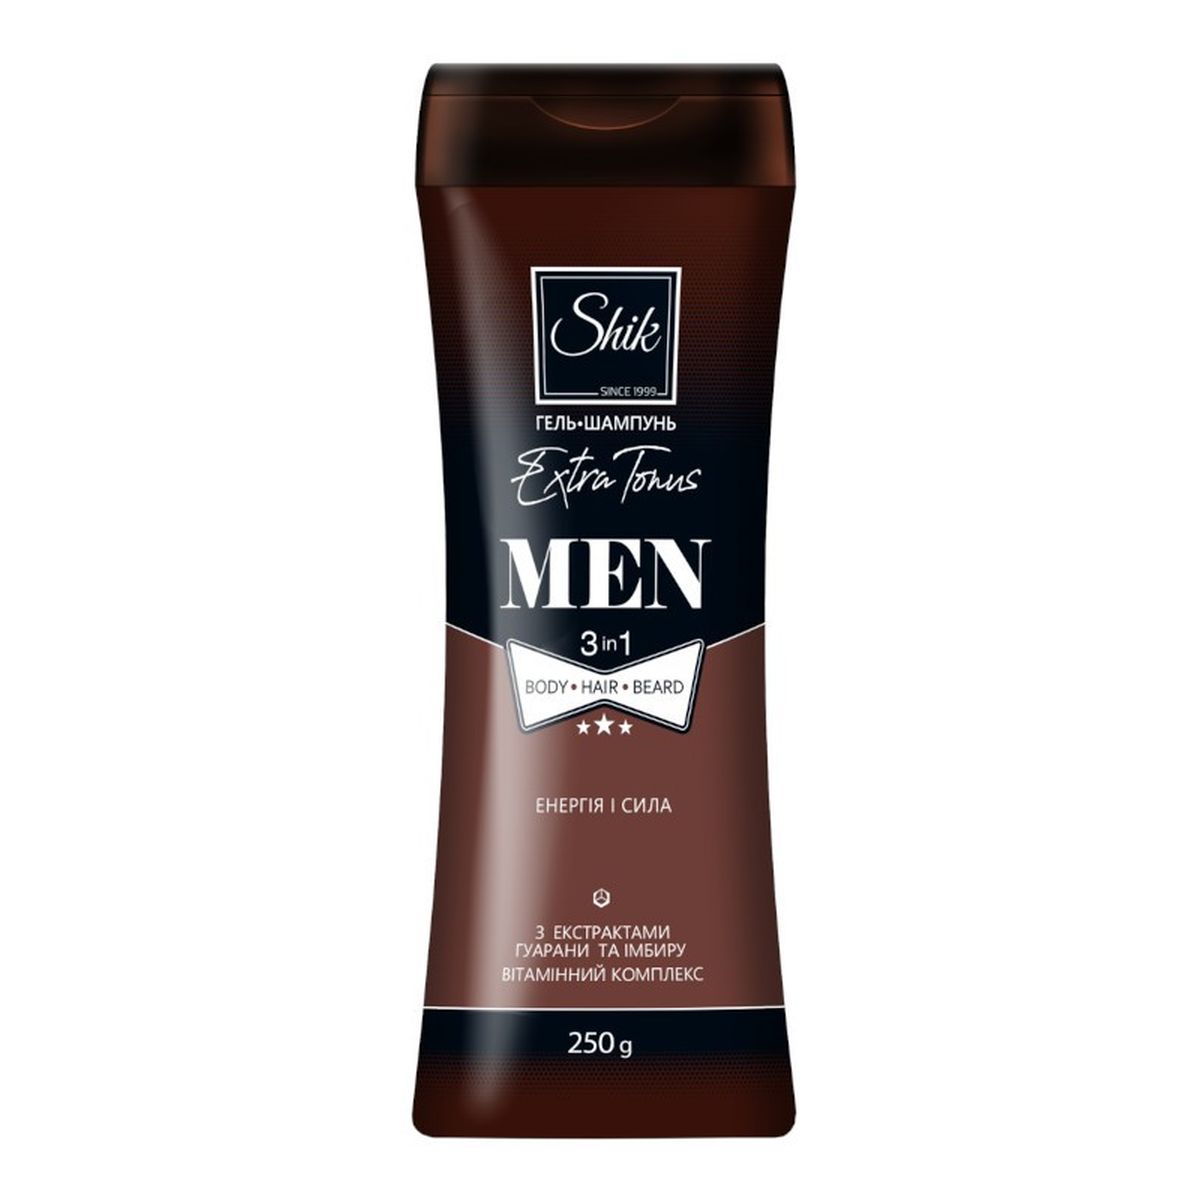 Shik Extra Tonus Żel pod prysznic i szampon dla mężczyzn 3w1 250g